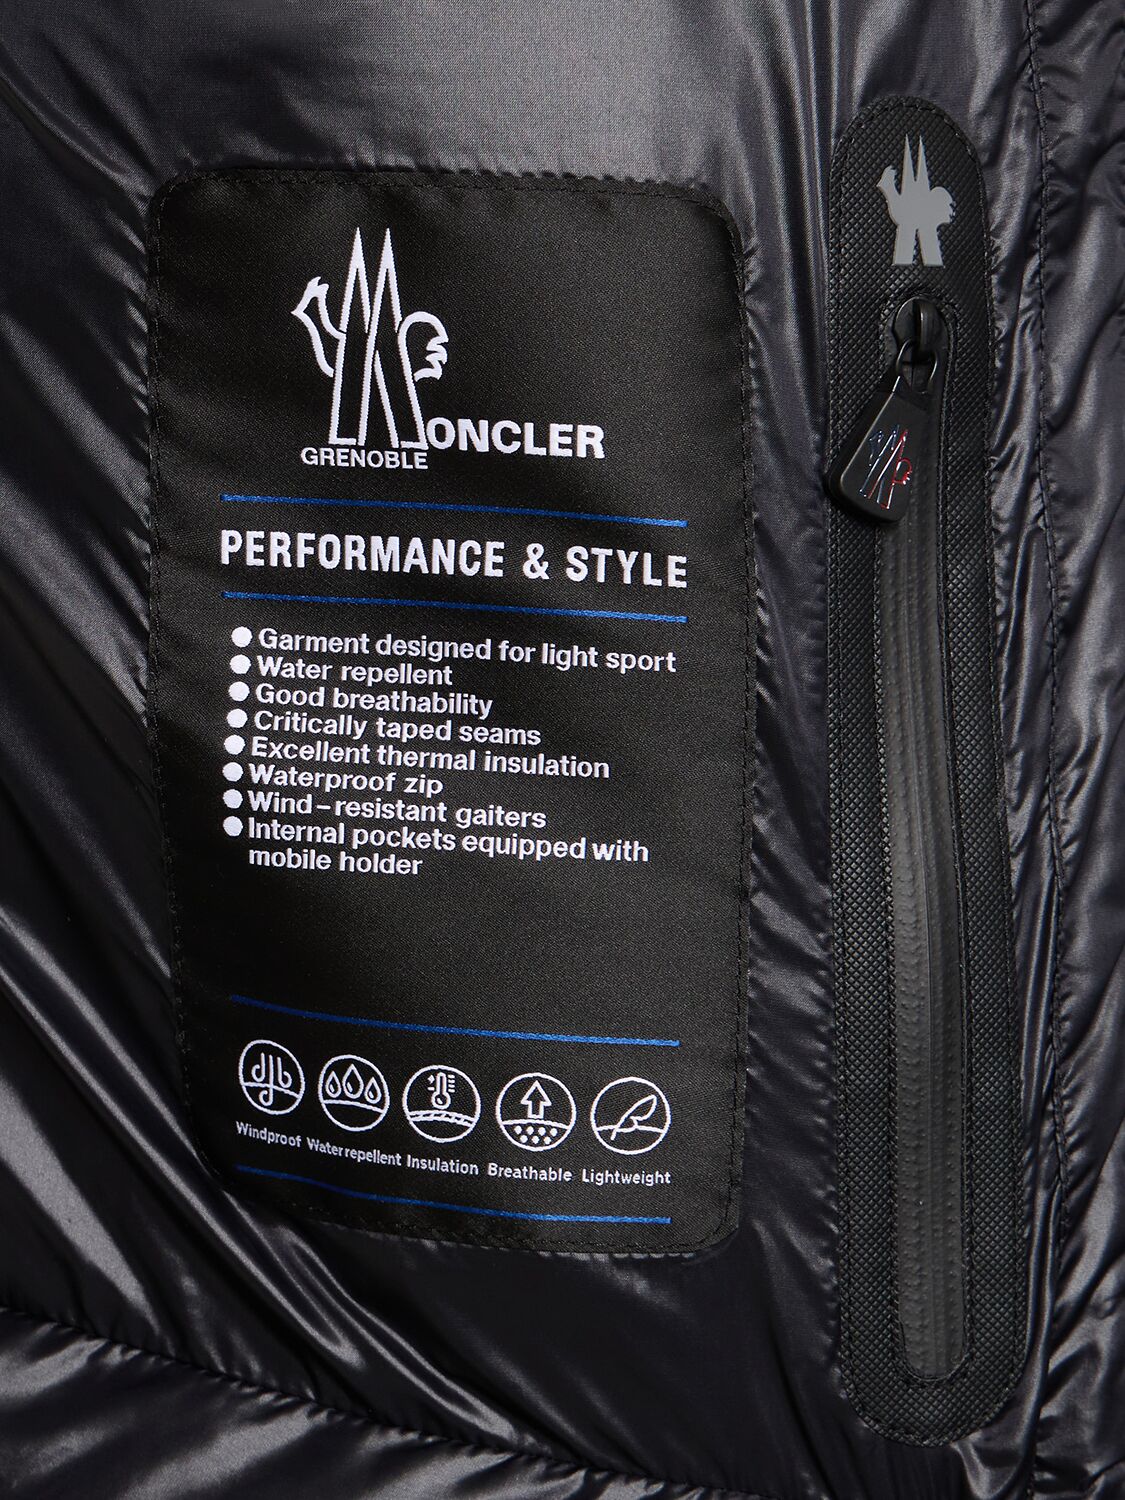 Shop Moncler Montgetech Nylon Down Ski Jacket In Black